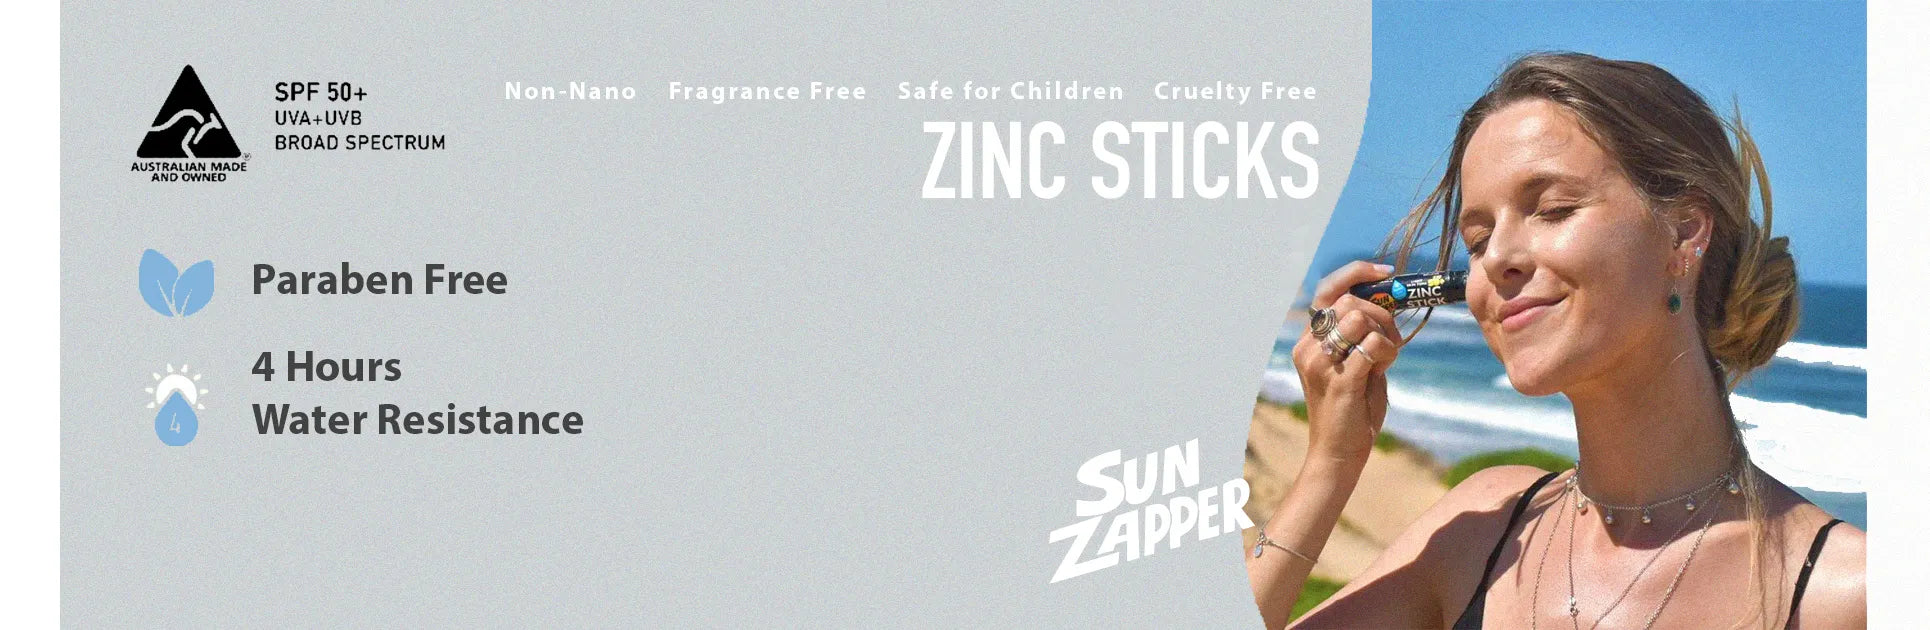 Zinc Sticks Organic Natural, Sun Zapper Zinc Sticks, Sunscreen, Dunedin, New Zealand